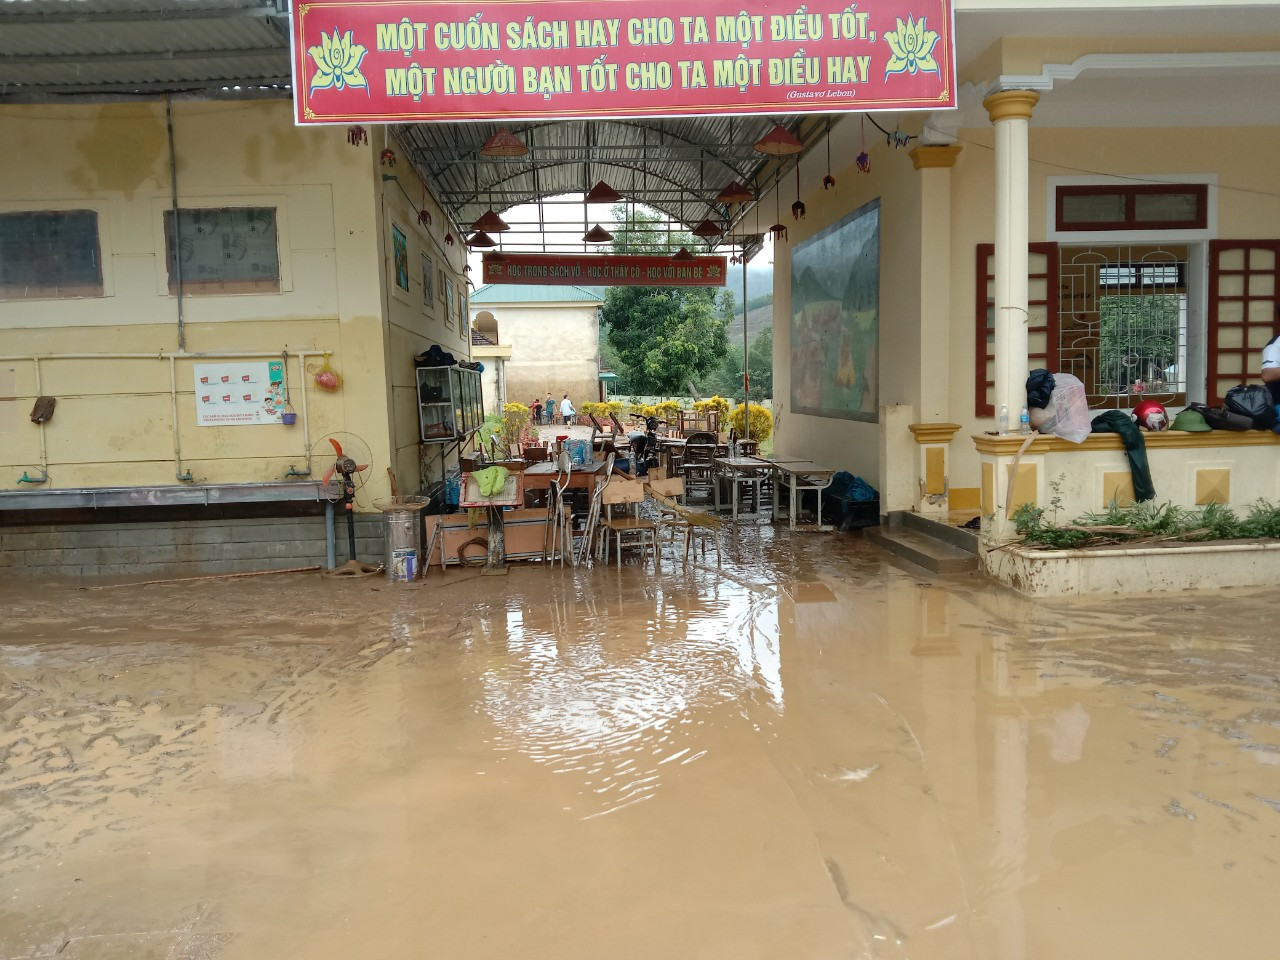 bna_Sau lũ Trường Tiểu học Châu Thắng ngập trong bùn lầy.jpg